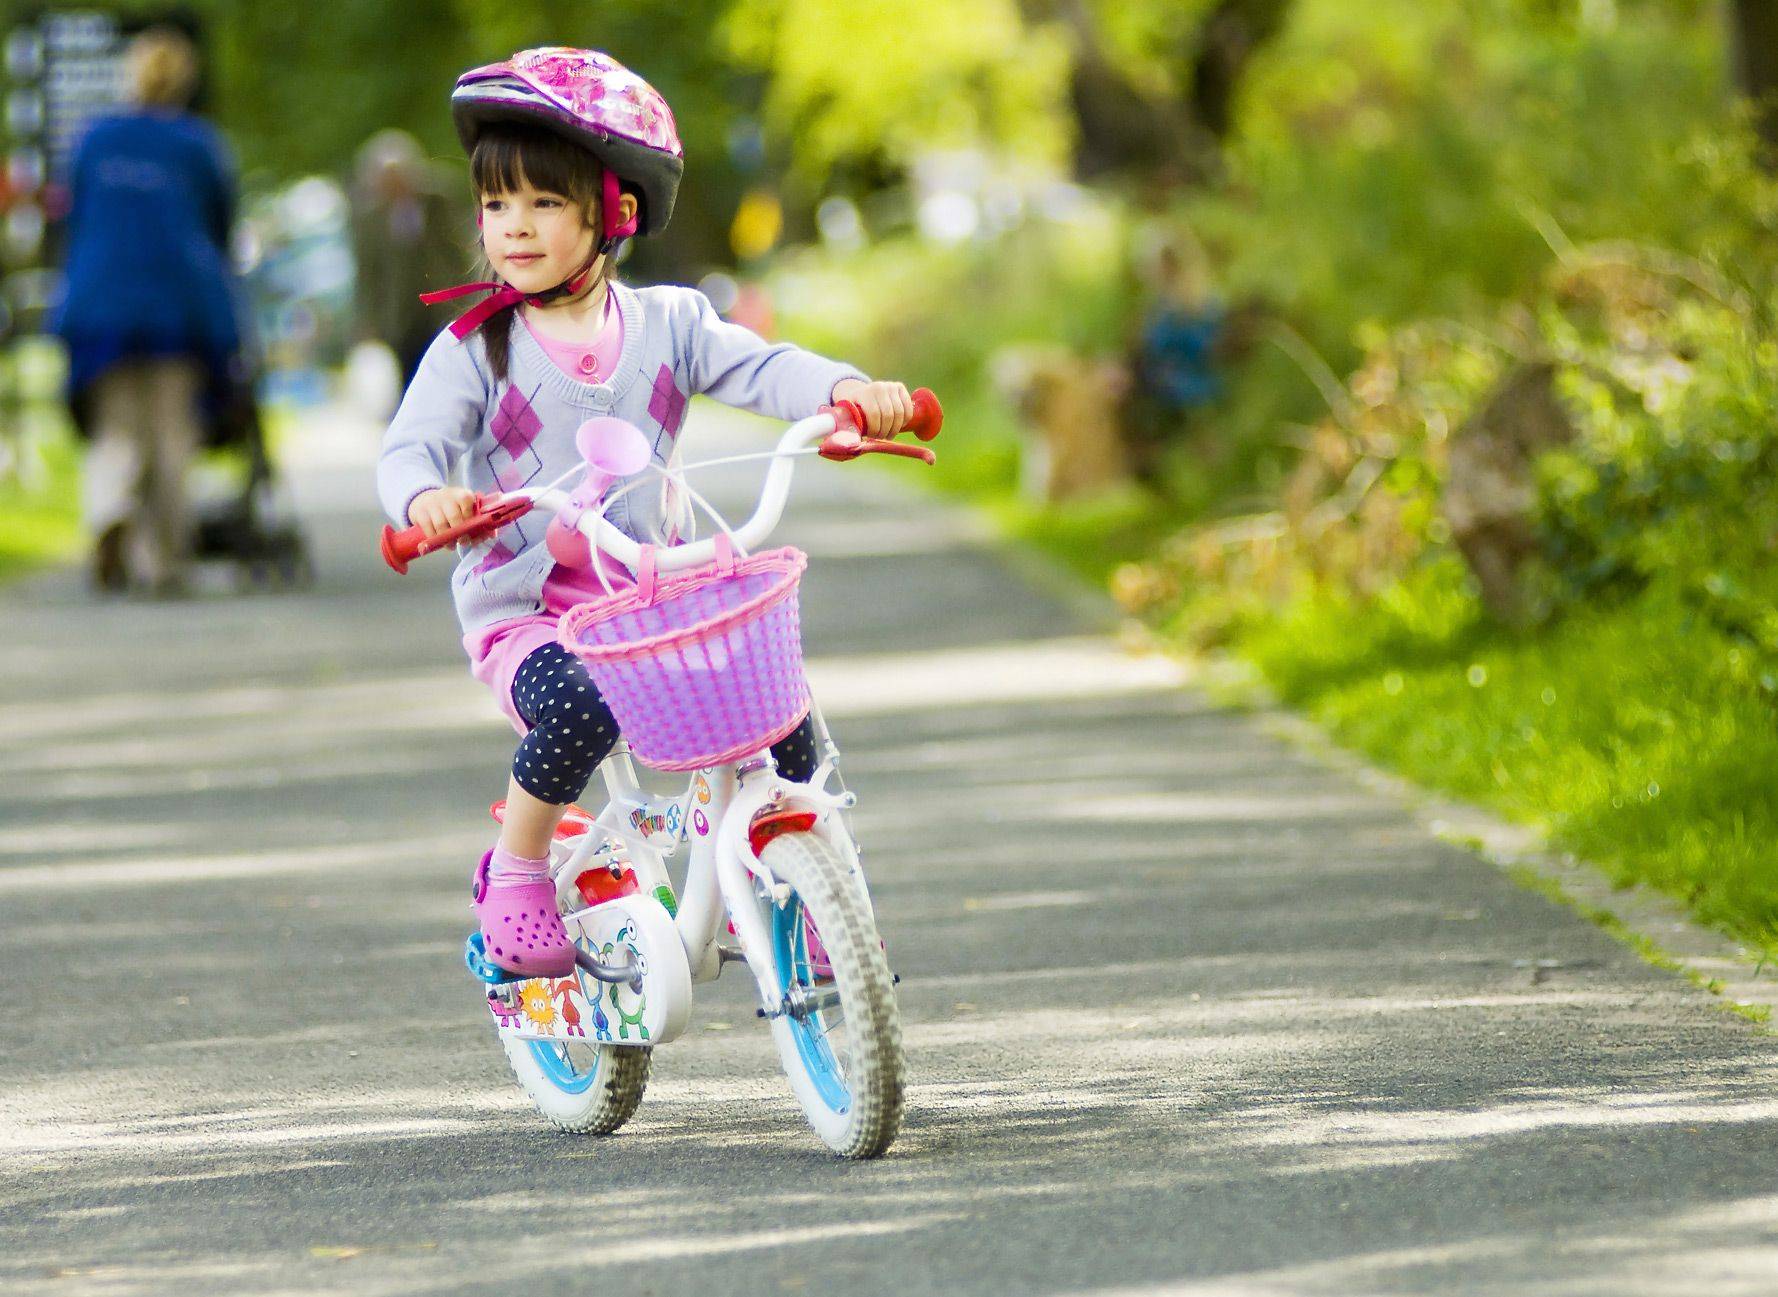 We got a bike. Велик для детей. Дети с велосипедом. Велосипед для девочки. Катание на велосипеде дети.